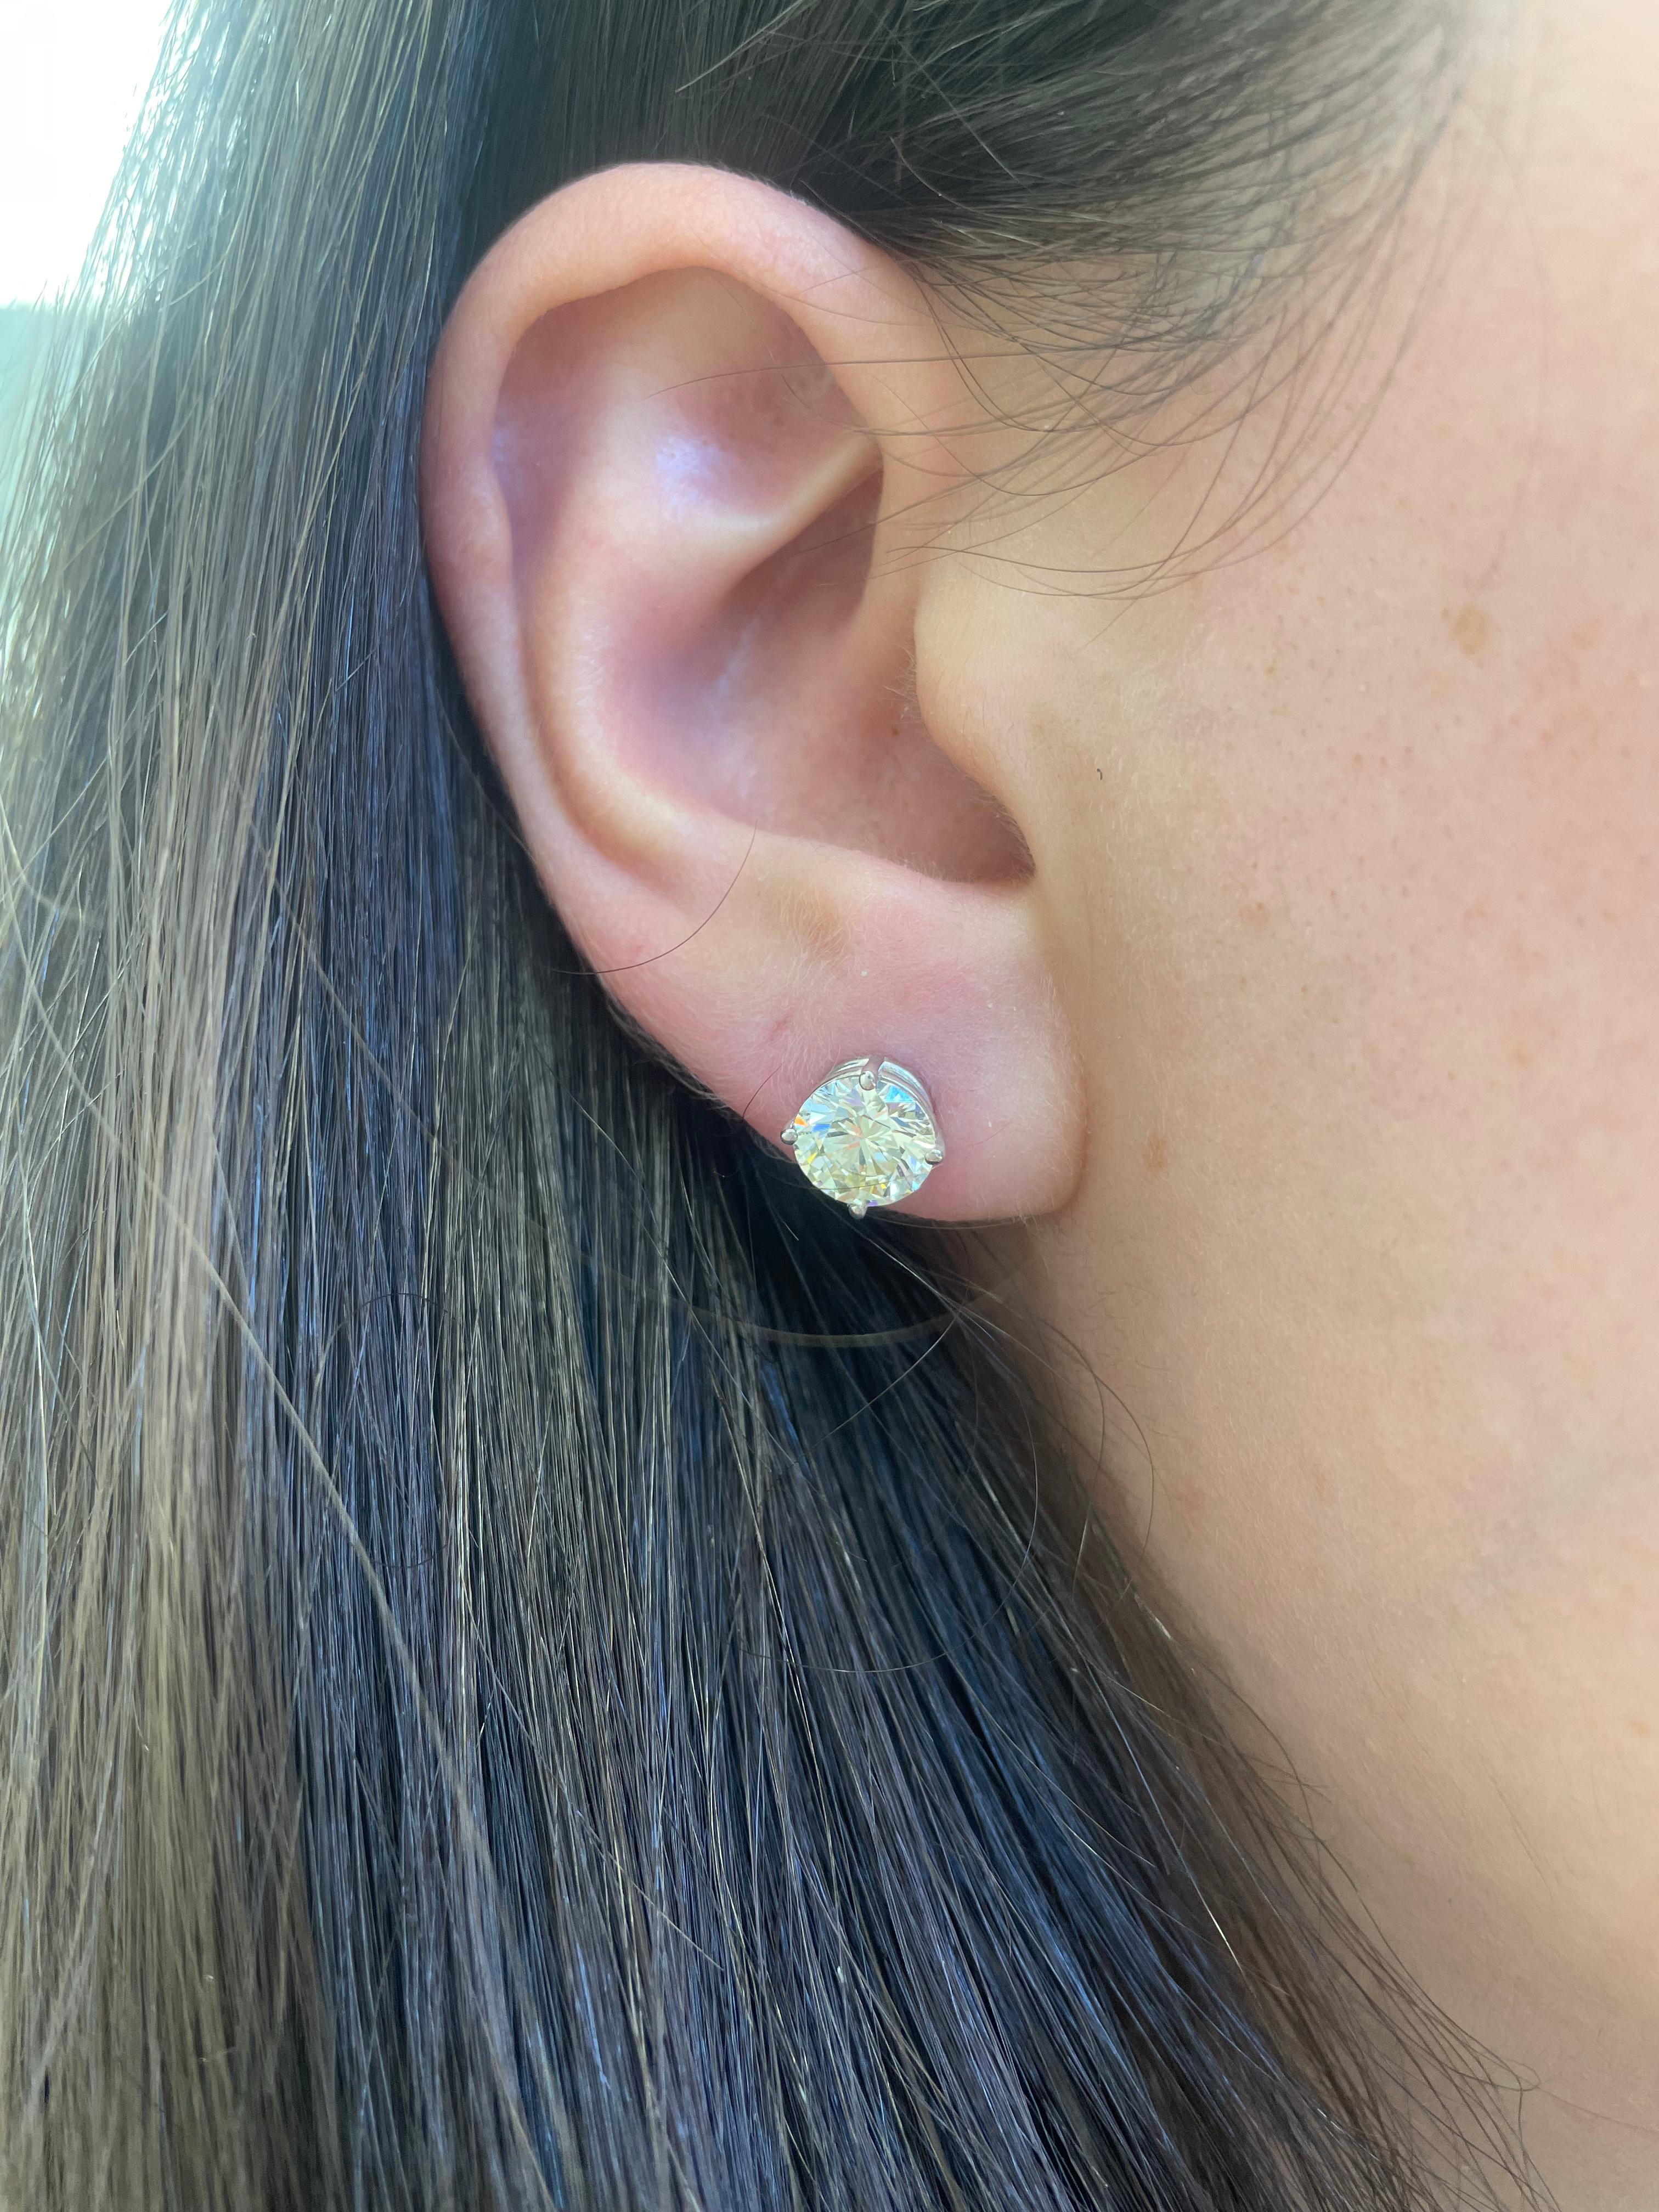 Klassische Diamant-Ohrstecker, jeder Stein EGL-zertifiziert, von Alexander Beverly Hills.
Zwei passende runde Brillanten von insgesamt 2,51 Karat. Beide Steine haben den Farbgrad L, ein Stein den Reinheitsgrad VS1 und der andere den Reinheitsgrad